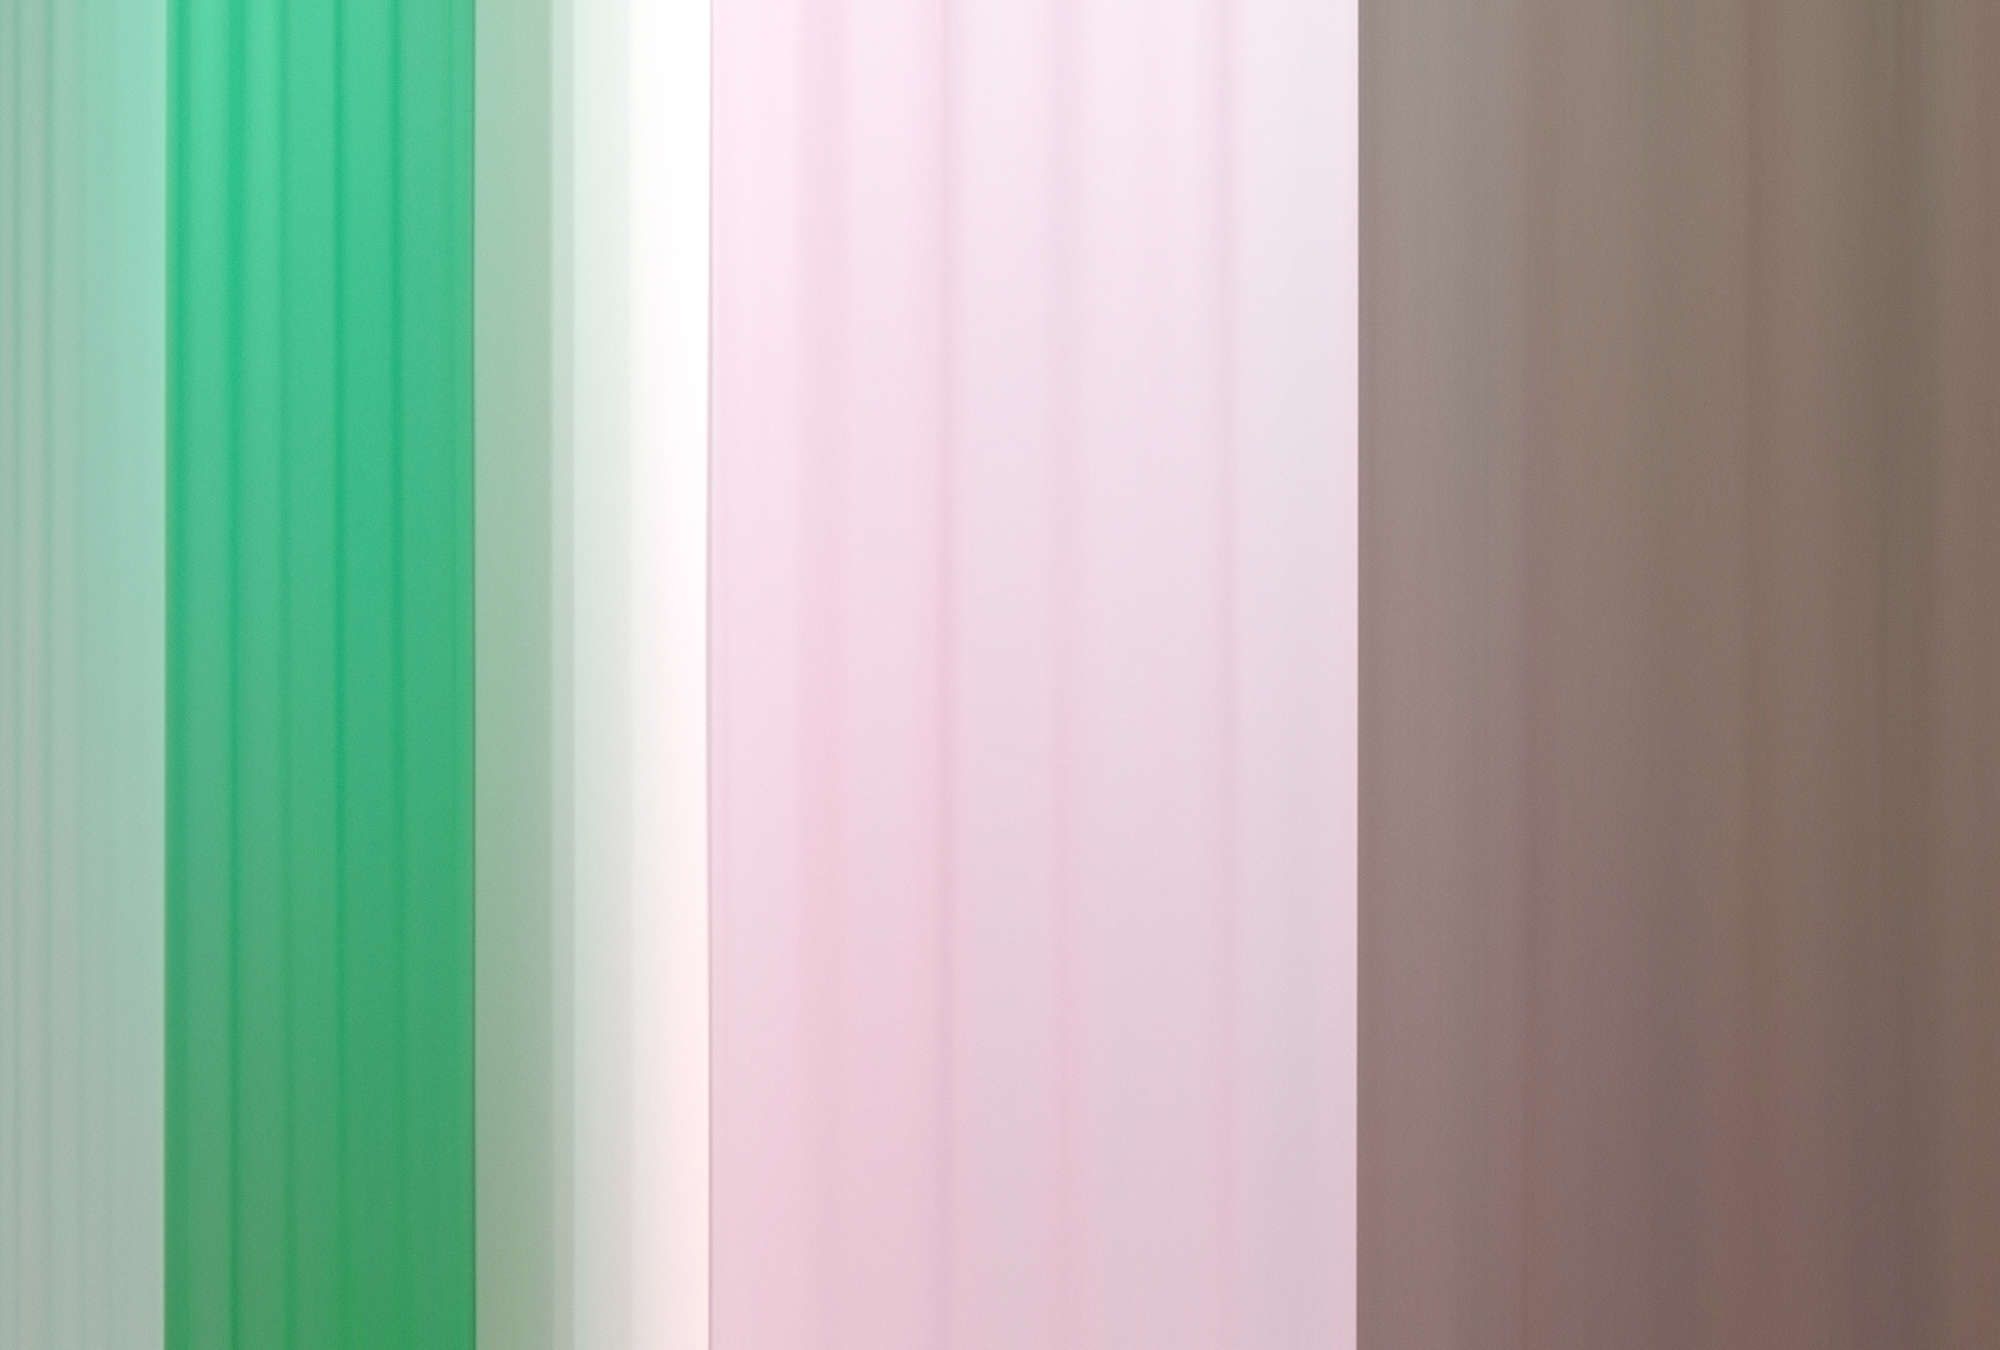             Digital behang »co-colores 1« - Kleurverloop met strepen - Groen Roze, Bruin | Licht structuurvlies
        